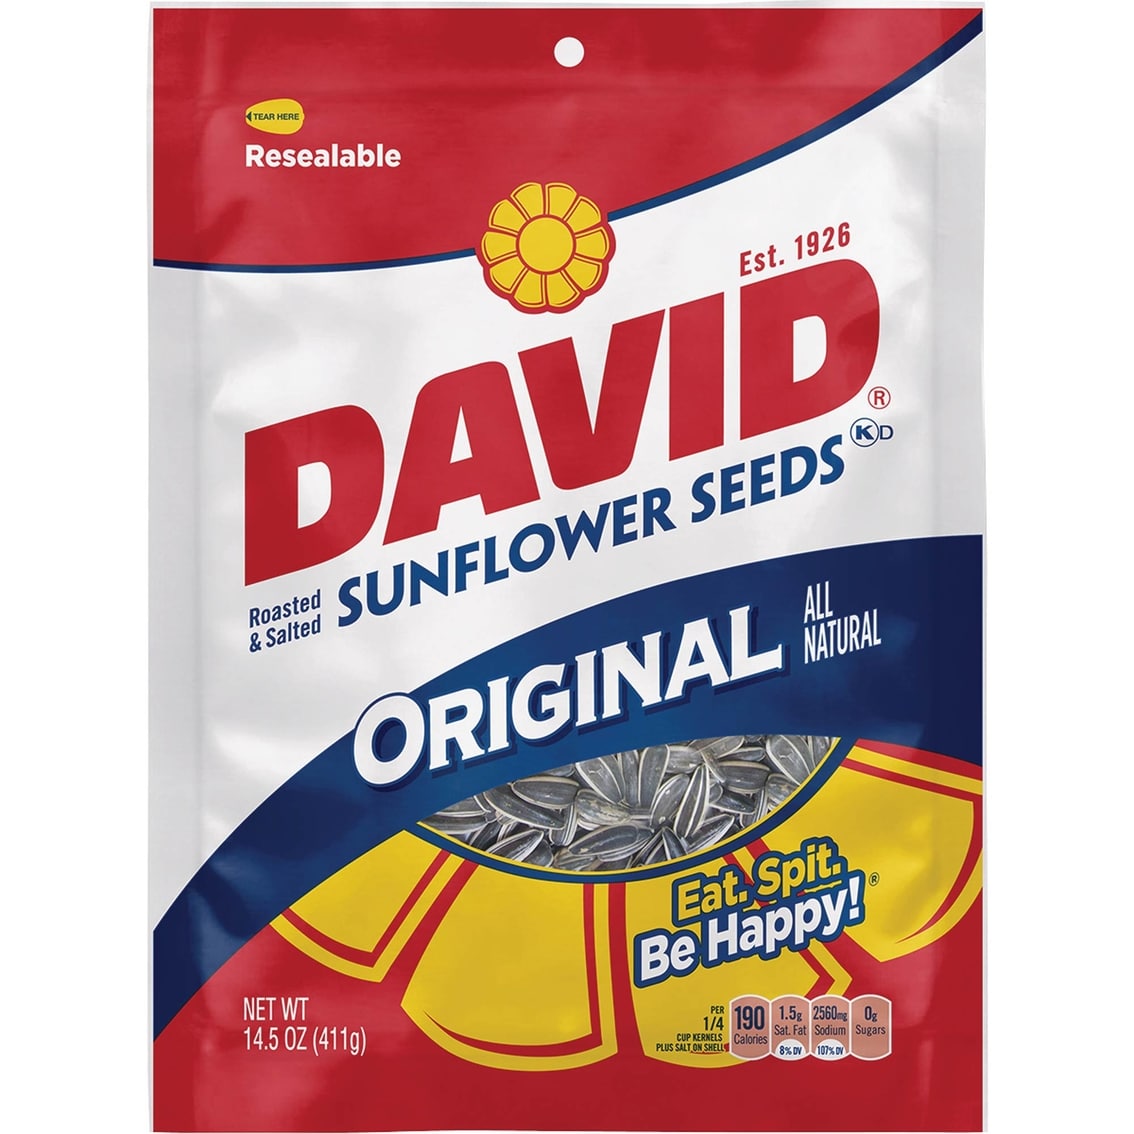 David's Seeds